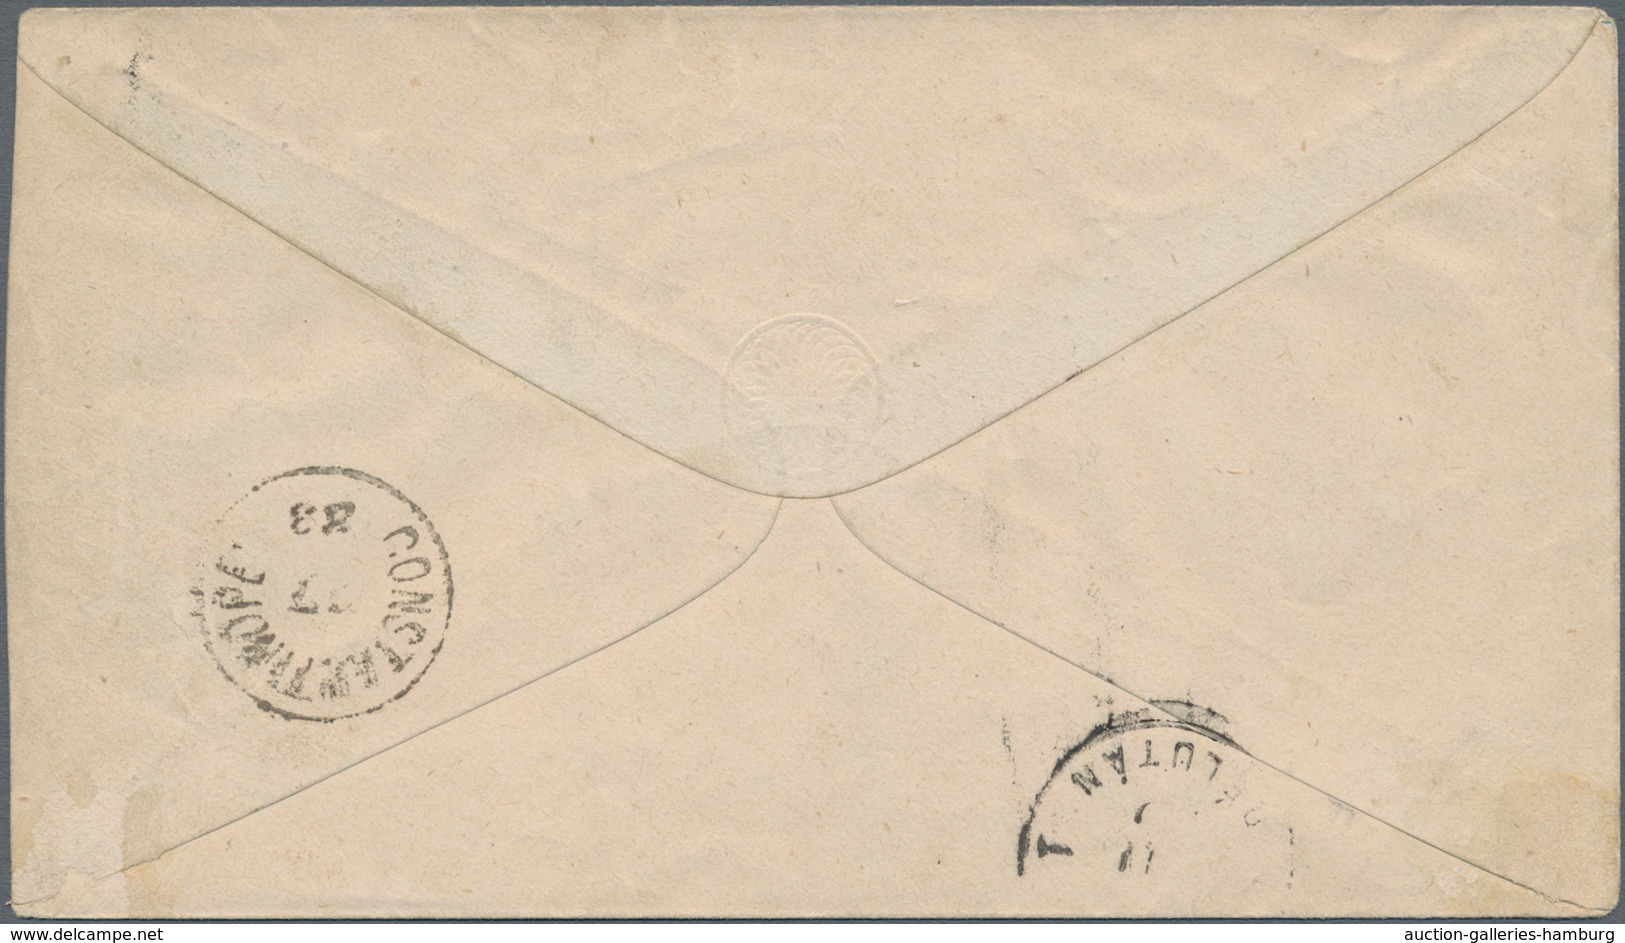 Österreichische Post In Der Levante: 1877, 10 So Blau Ganzsachenumschlag Von FILIPOPOLI, 14/11, Via - Oostenrijkse Levant